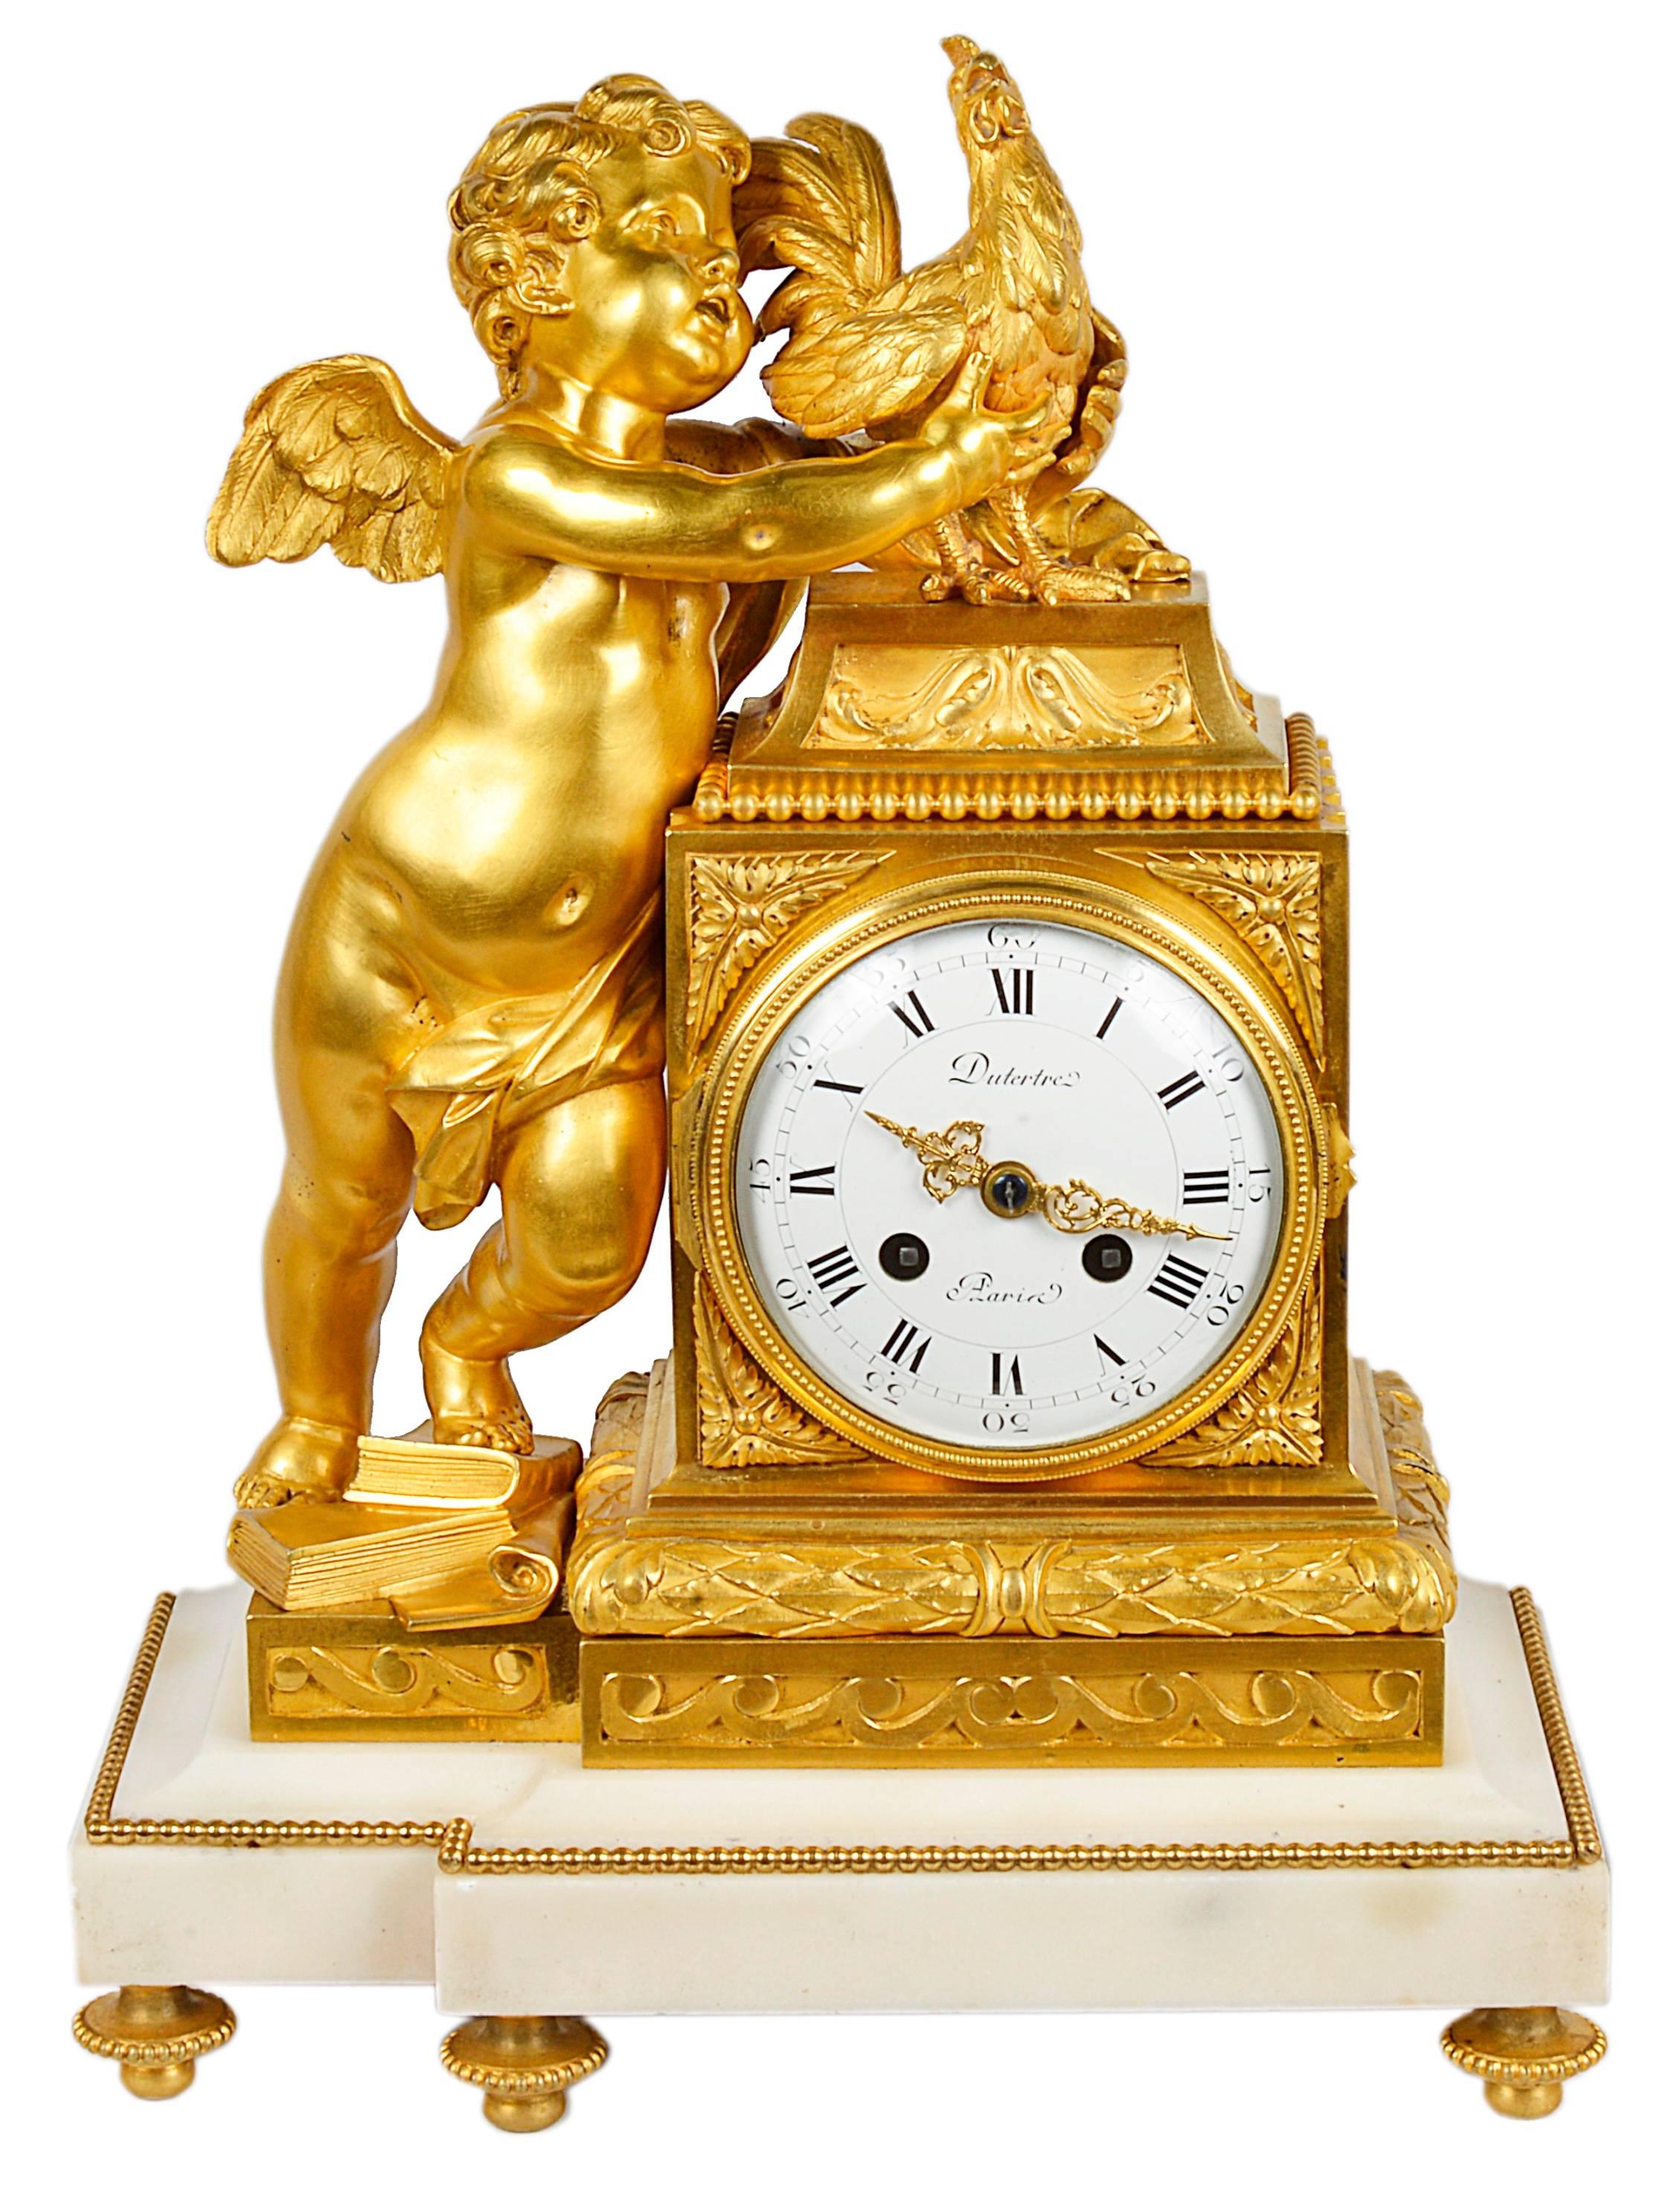 Une très belle garniture d'horloge française en bronze doré et marbre blanc de style Louis XVI. La pendule représente un chérubin tenant un poulet, le cadran en émail blanc avec un mouvement à sonnerie de huit jours, signé Dutertre, Paris
La paire